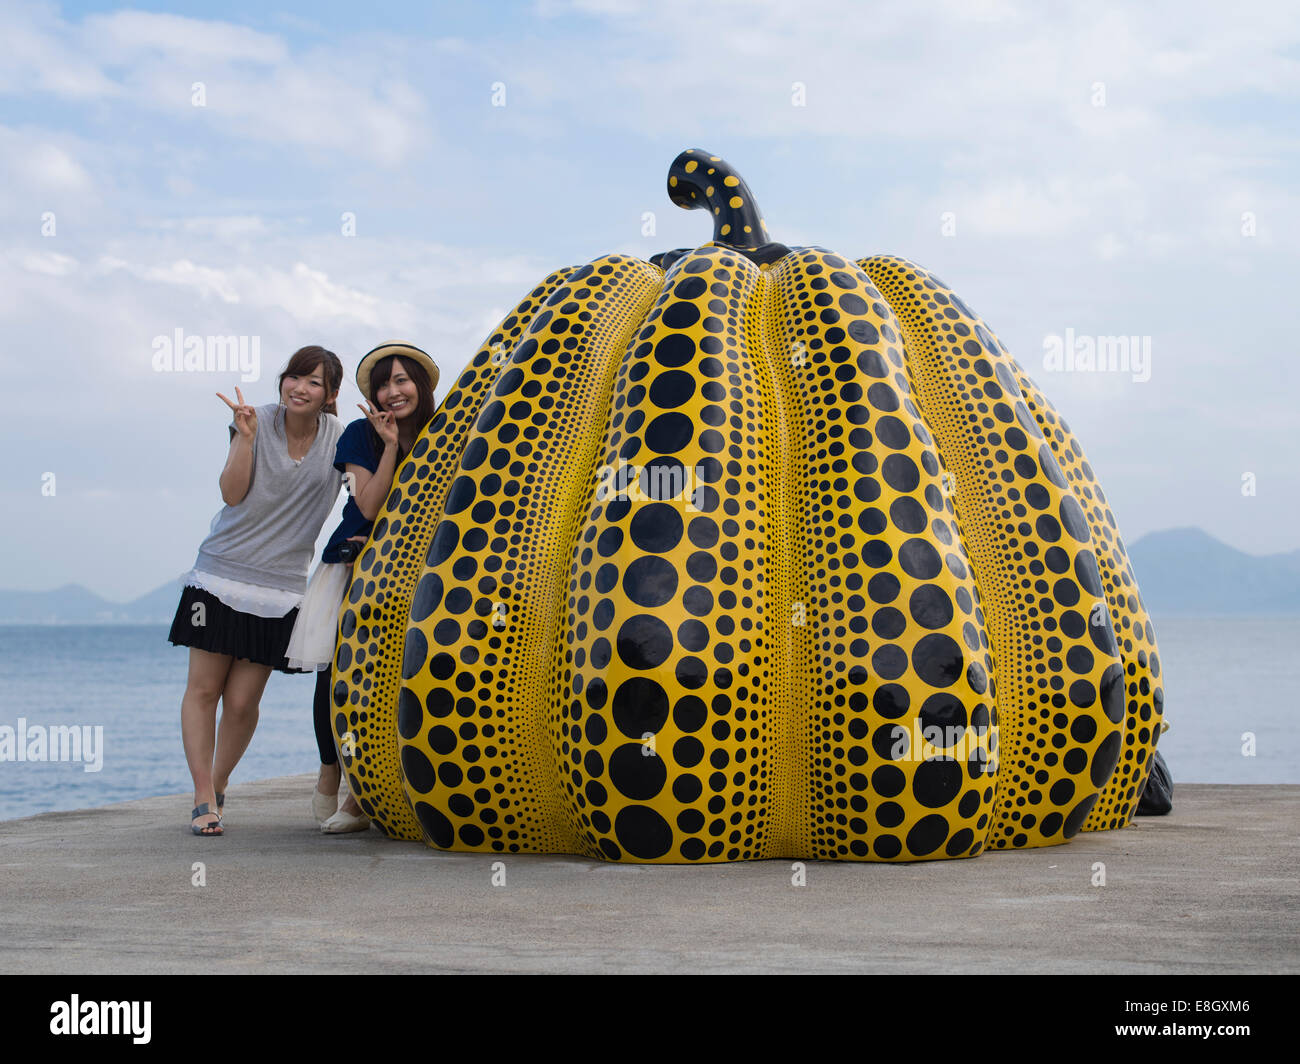 Women walk by the Pumpkin sculptures by Japanese artist Yayoi